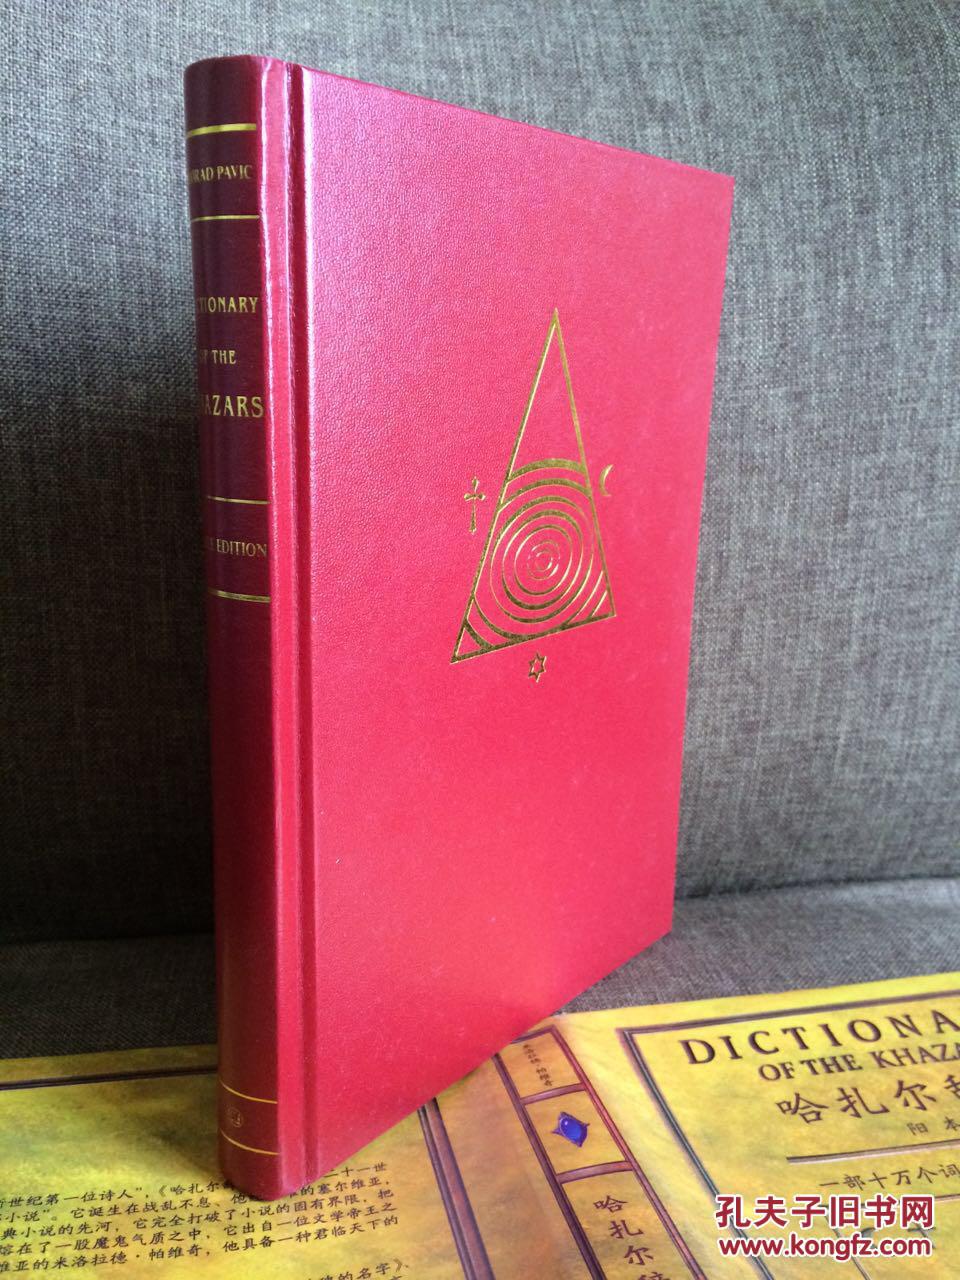 【图】哈扎尔辞典:一部十万个词语的辞典小说